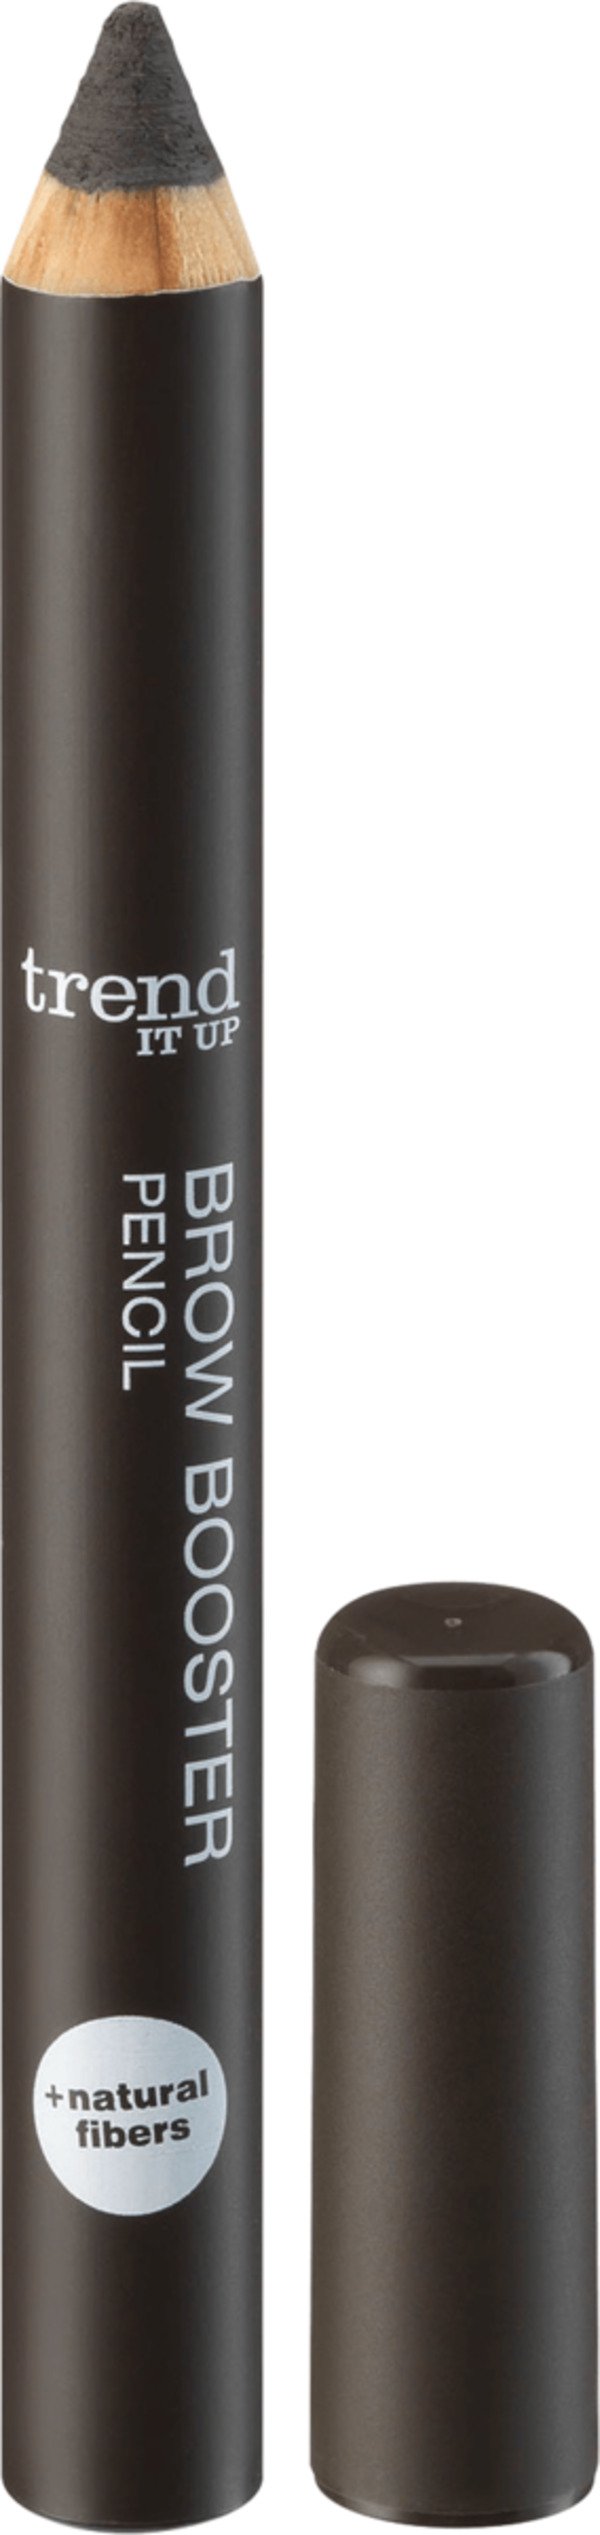 Bild 1 von trend !t up Augenbrauen Brow Booster Pencil dunkel-braun 040